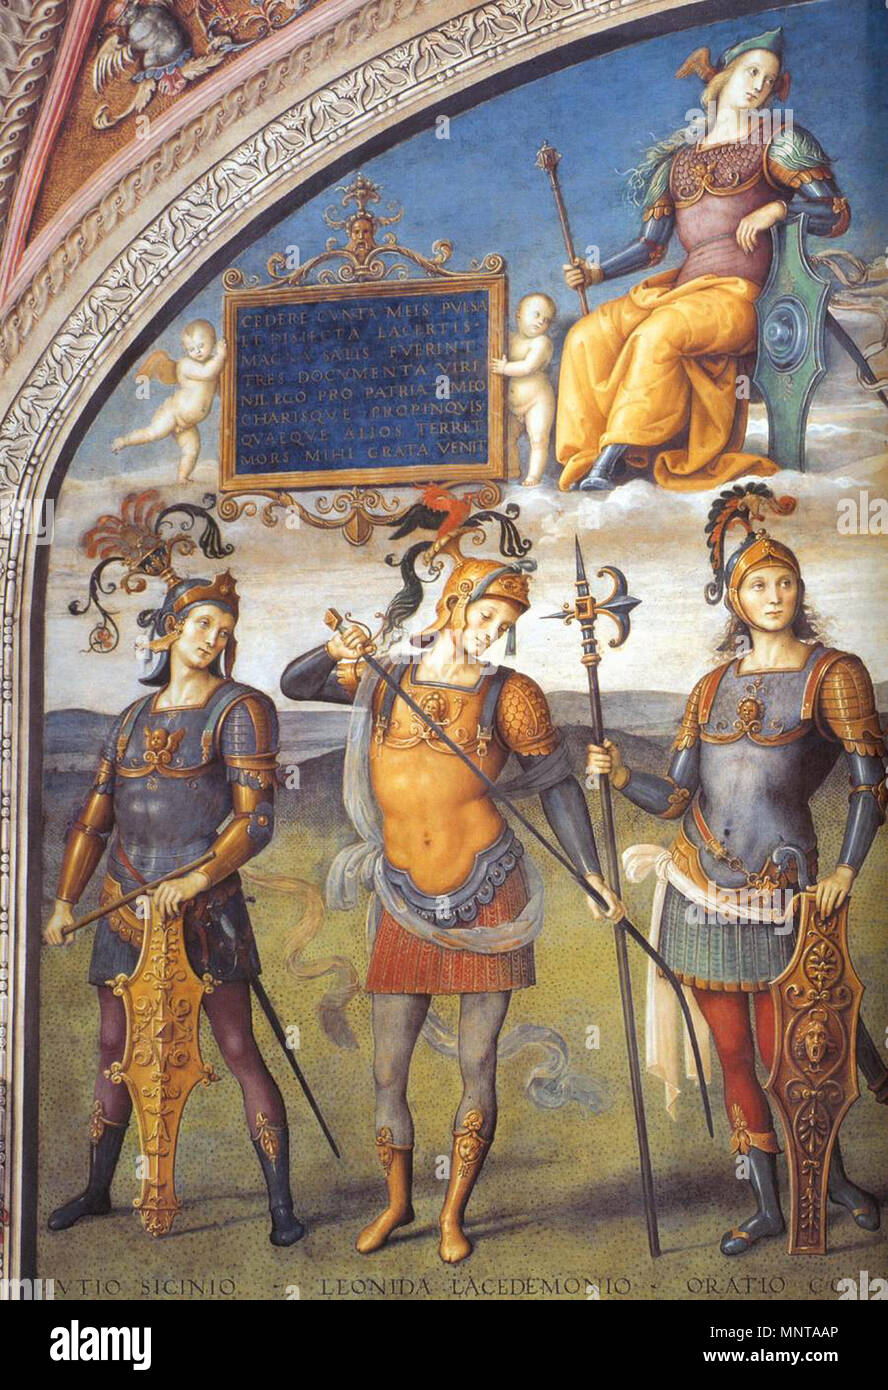 Les hommes célèbres de l'Antiquité (détail) entre 1497 et 1500. 996 Pietro Perugino - hommes célèbres de l'Antiquité (détail) - WGA17237 Banque D'Images